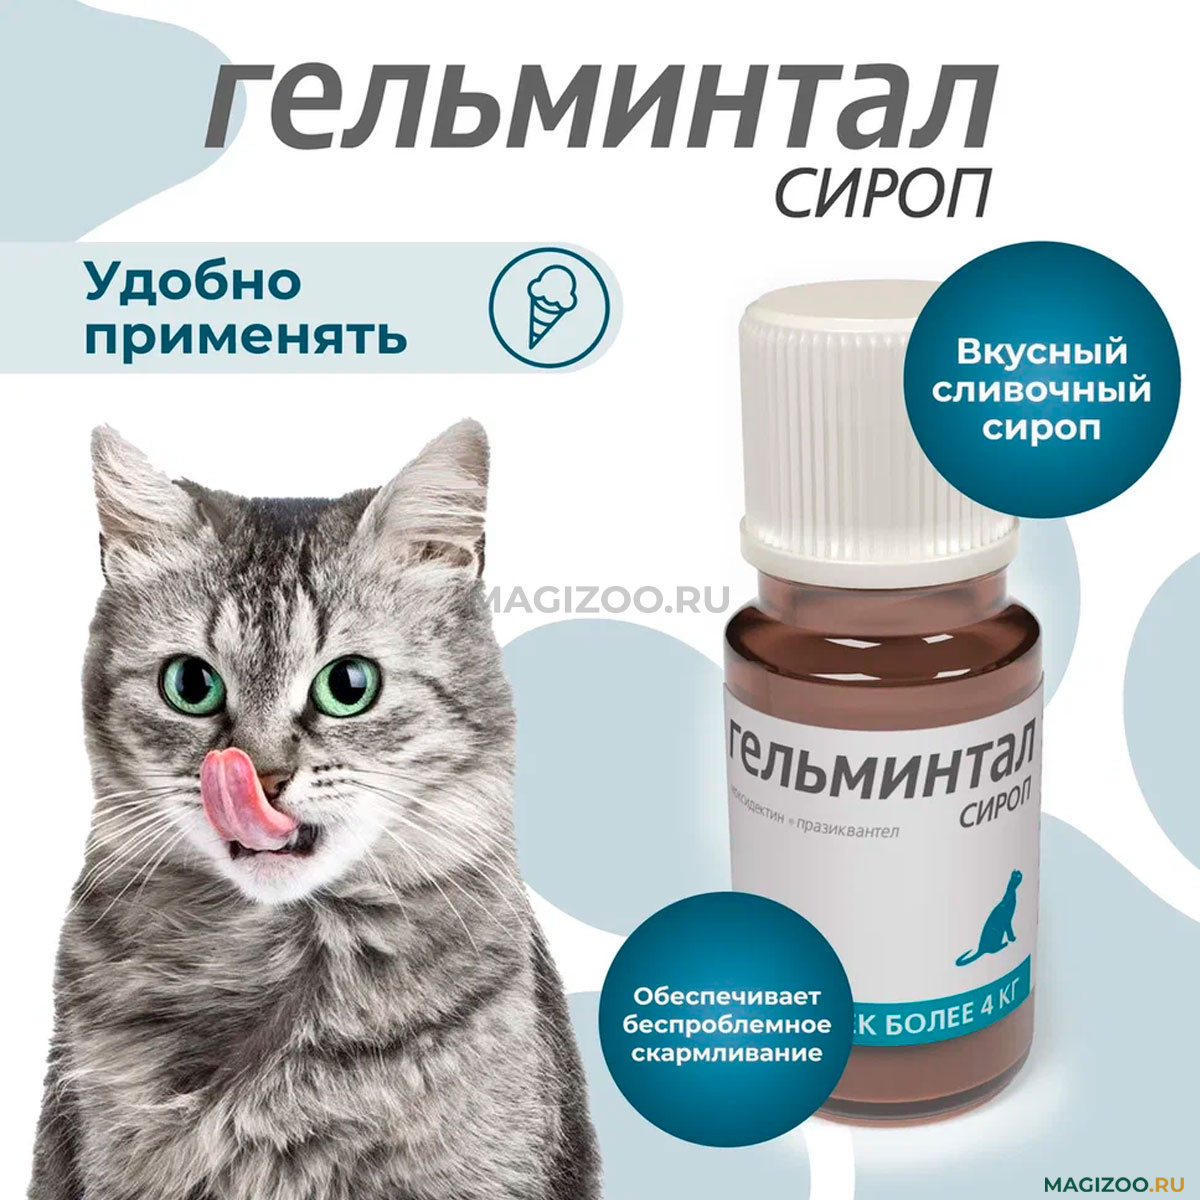 ГЕЛЬМИНТАЛ СИРОП антигельминтик для взрослых кошек весом от 4 кг (5 мл)  купить в интернет-магазине по цене от 375 ₽, доставка по Москве